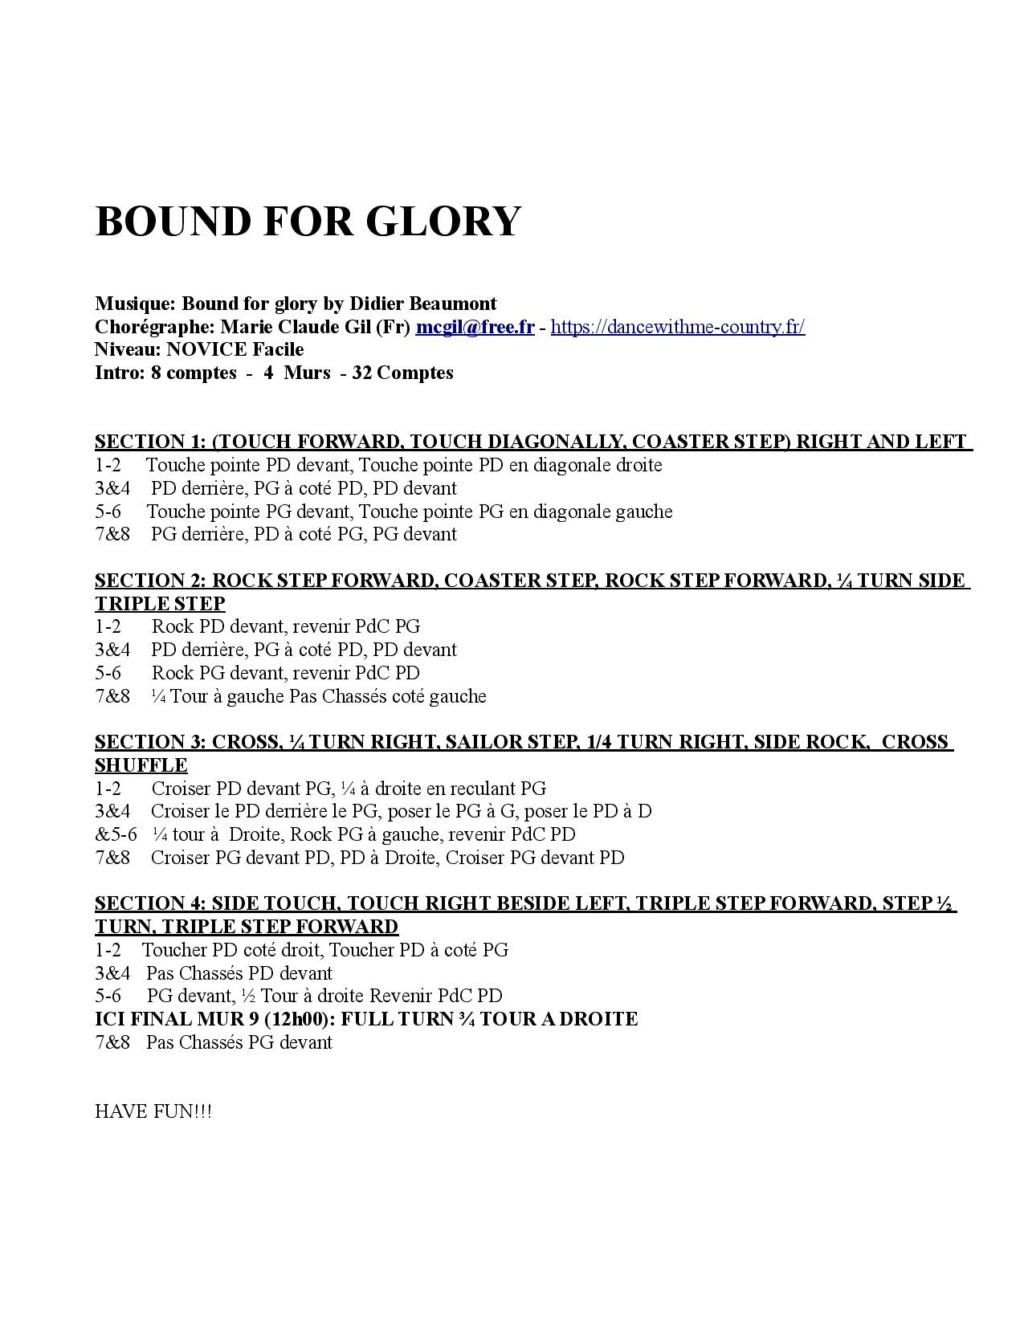 P D F - BOUND FOR GLORY - NOVICE  Bound_11